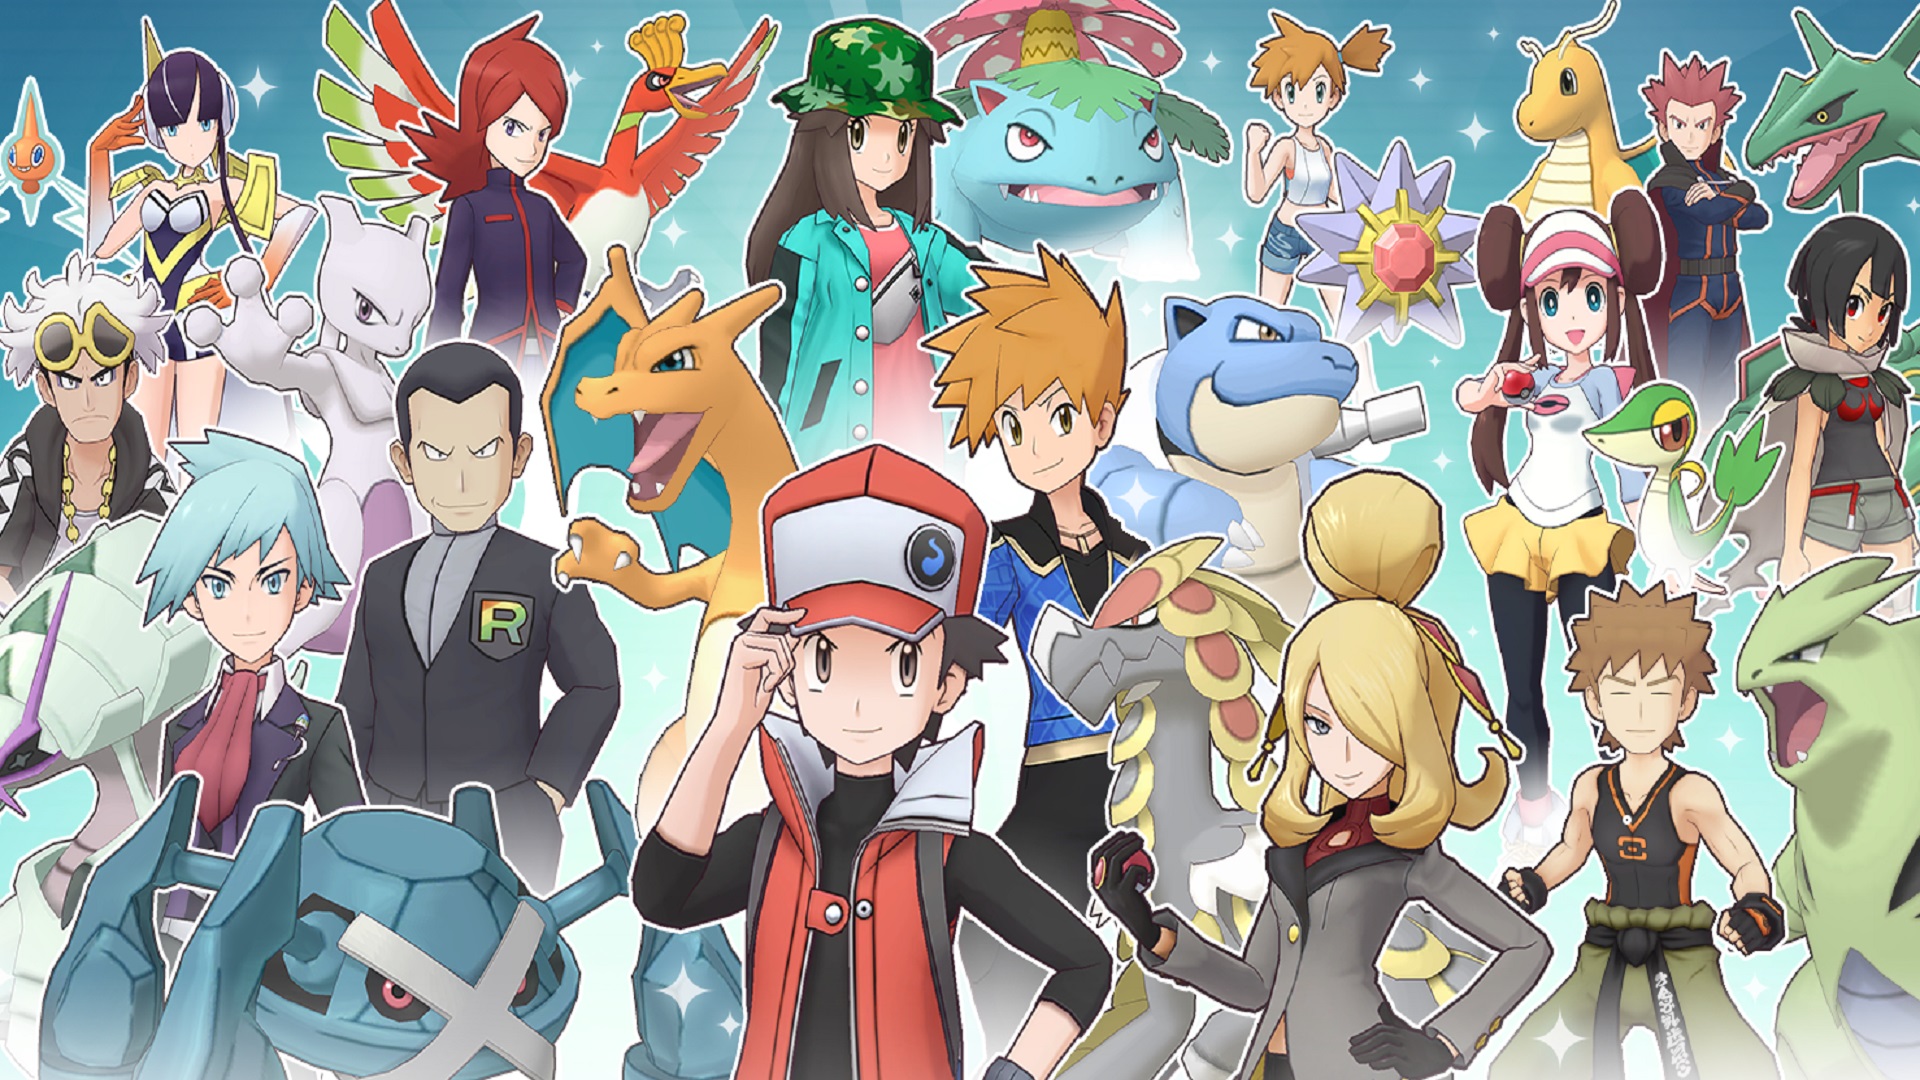 Pokémon Masters EX official site